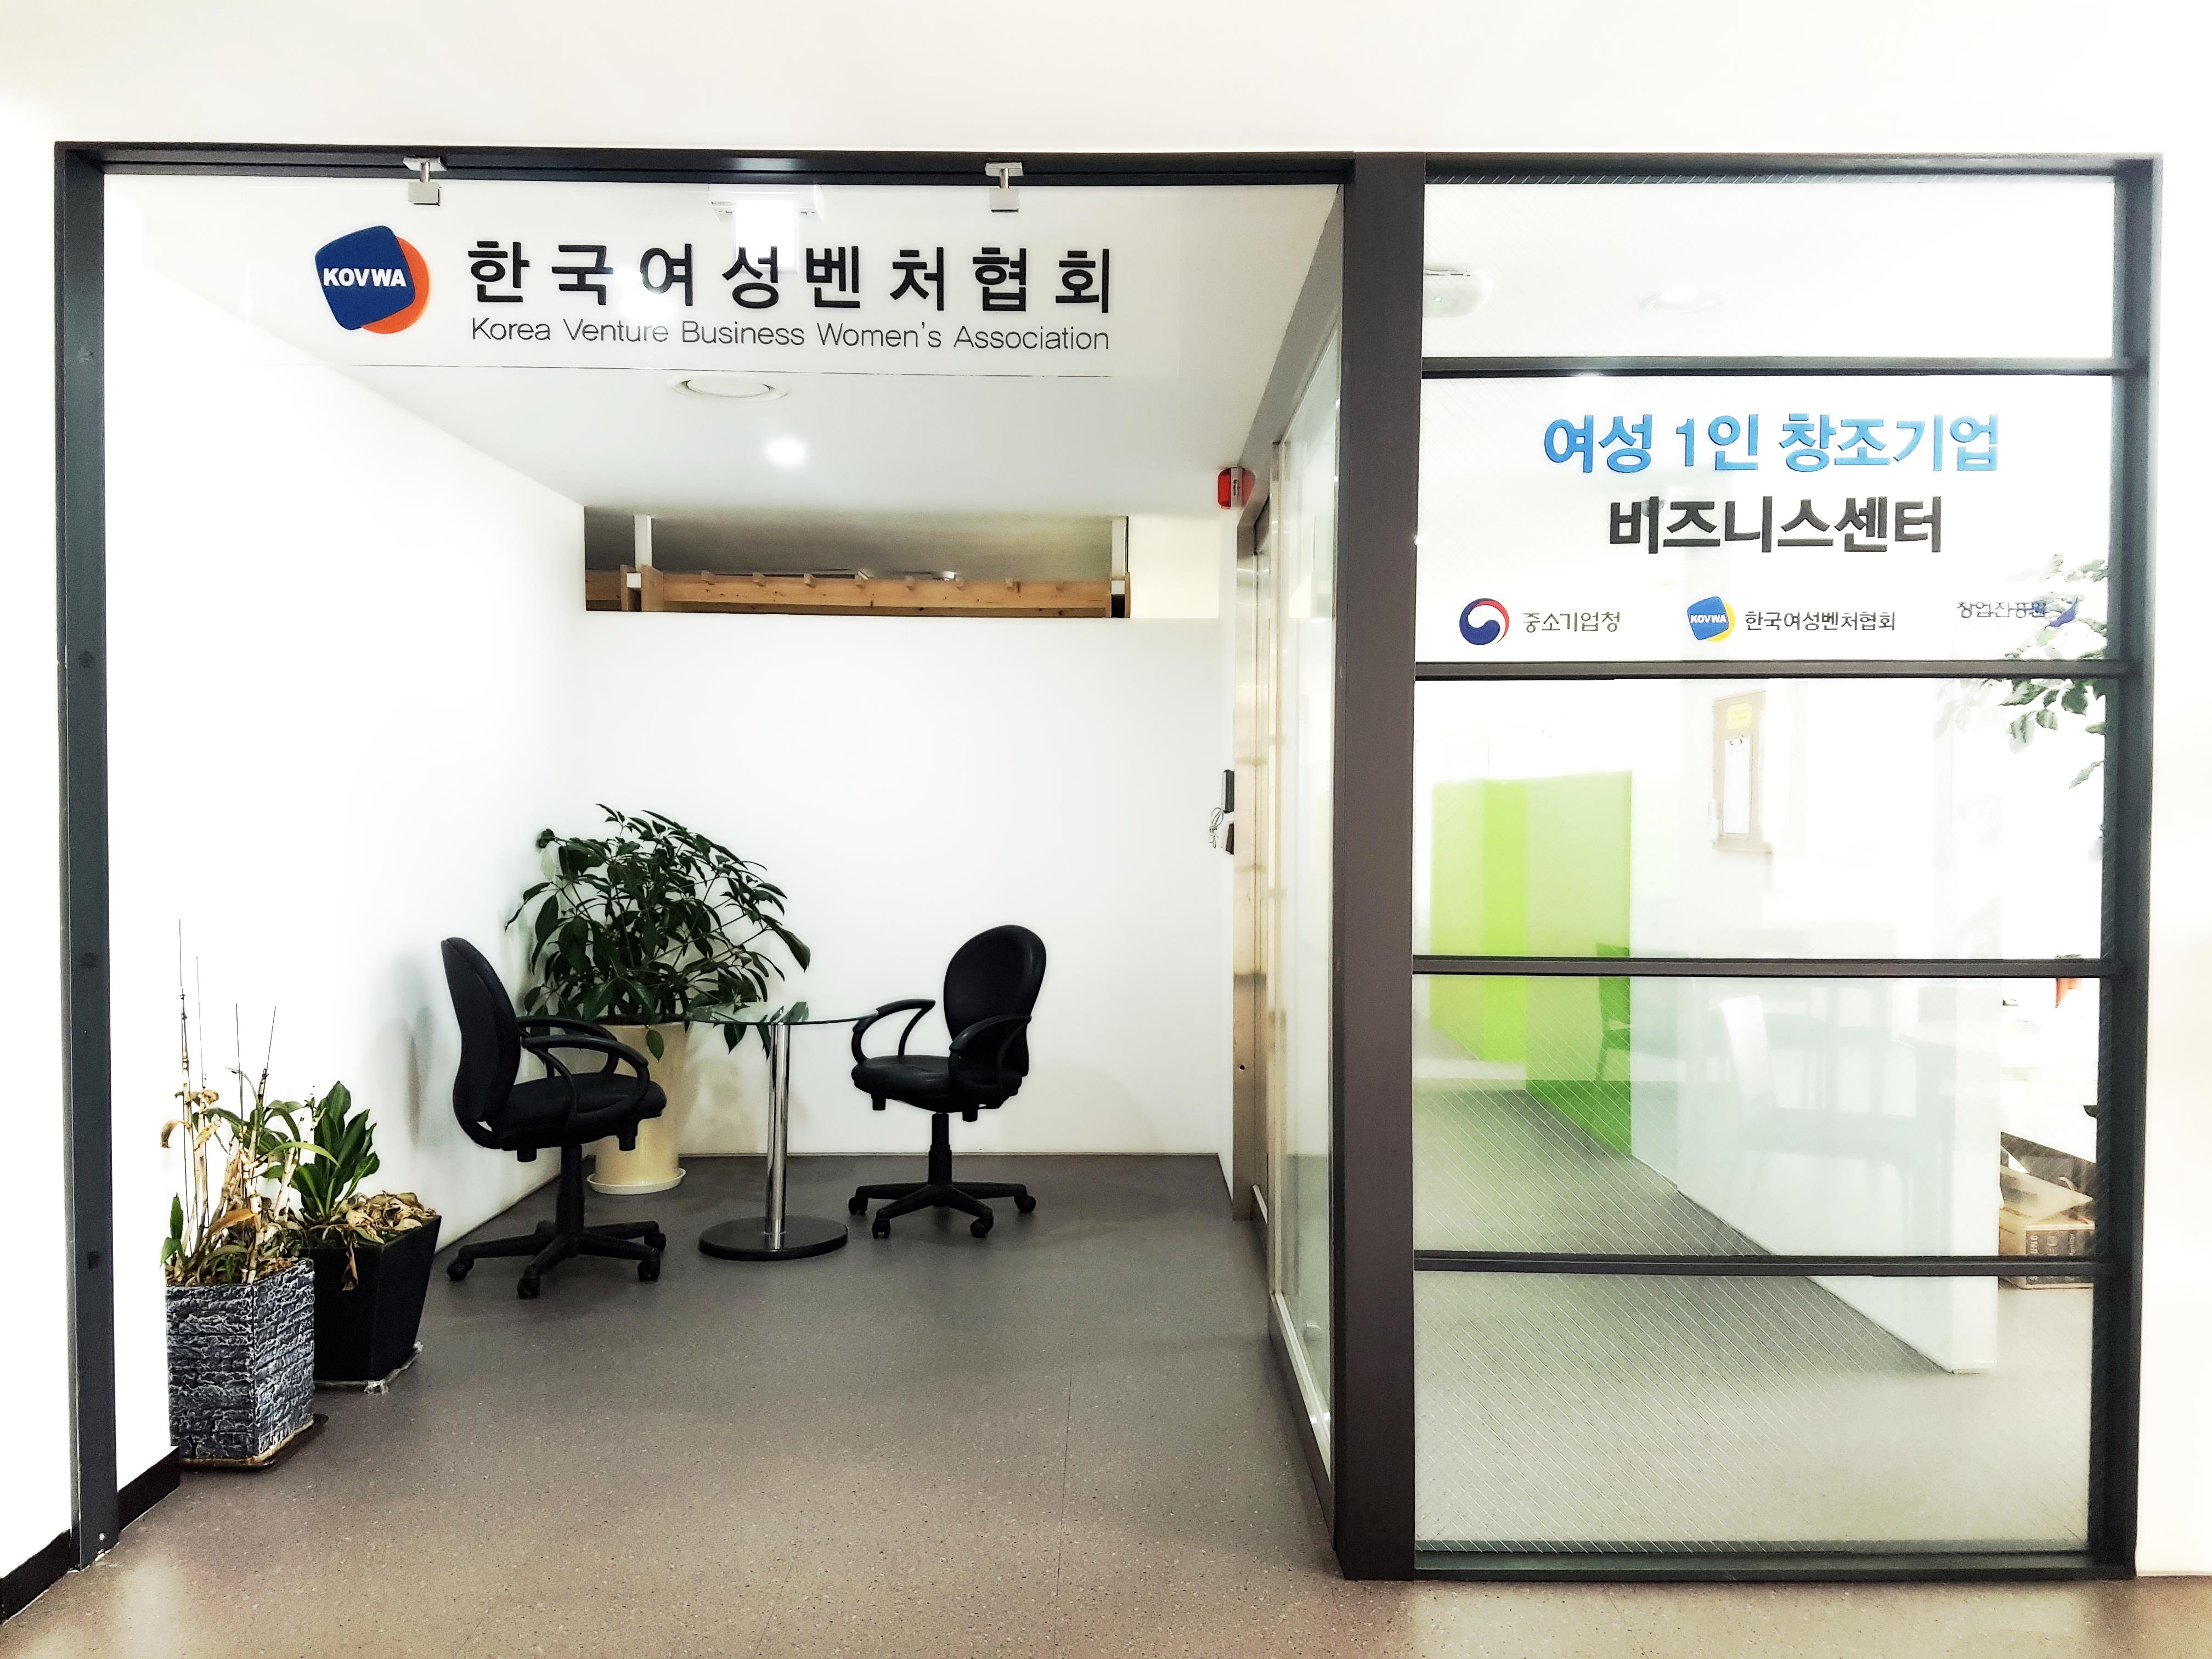 한국여성벤처협회 내부 사진 및 홈페이지 이동